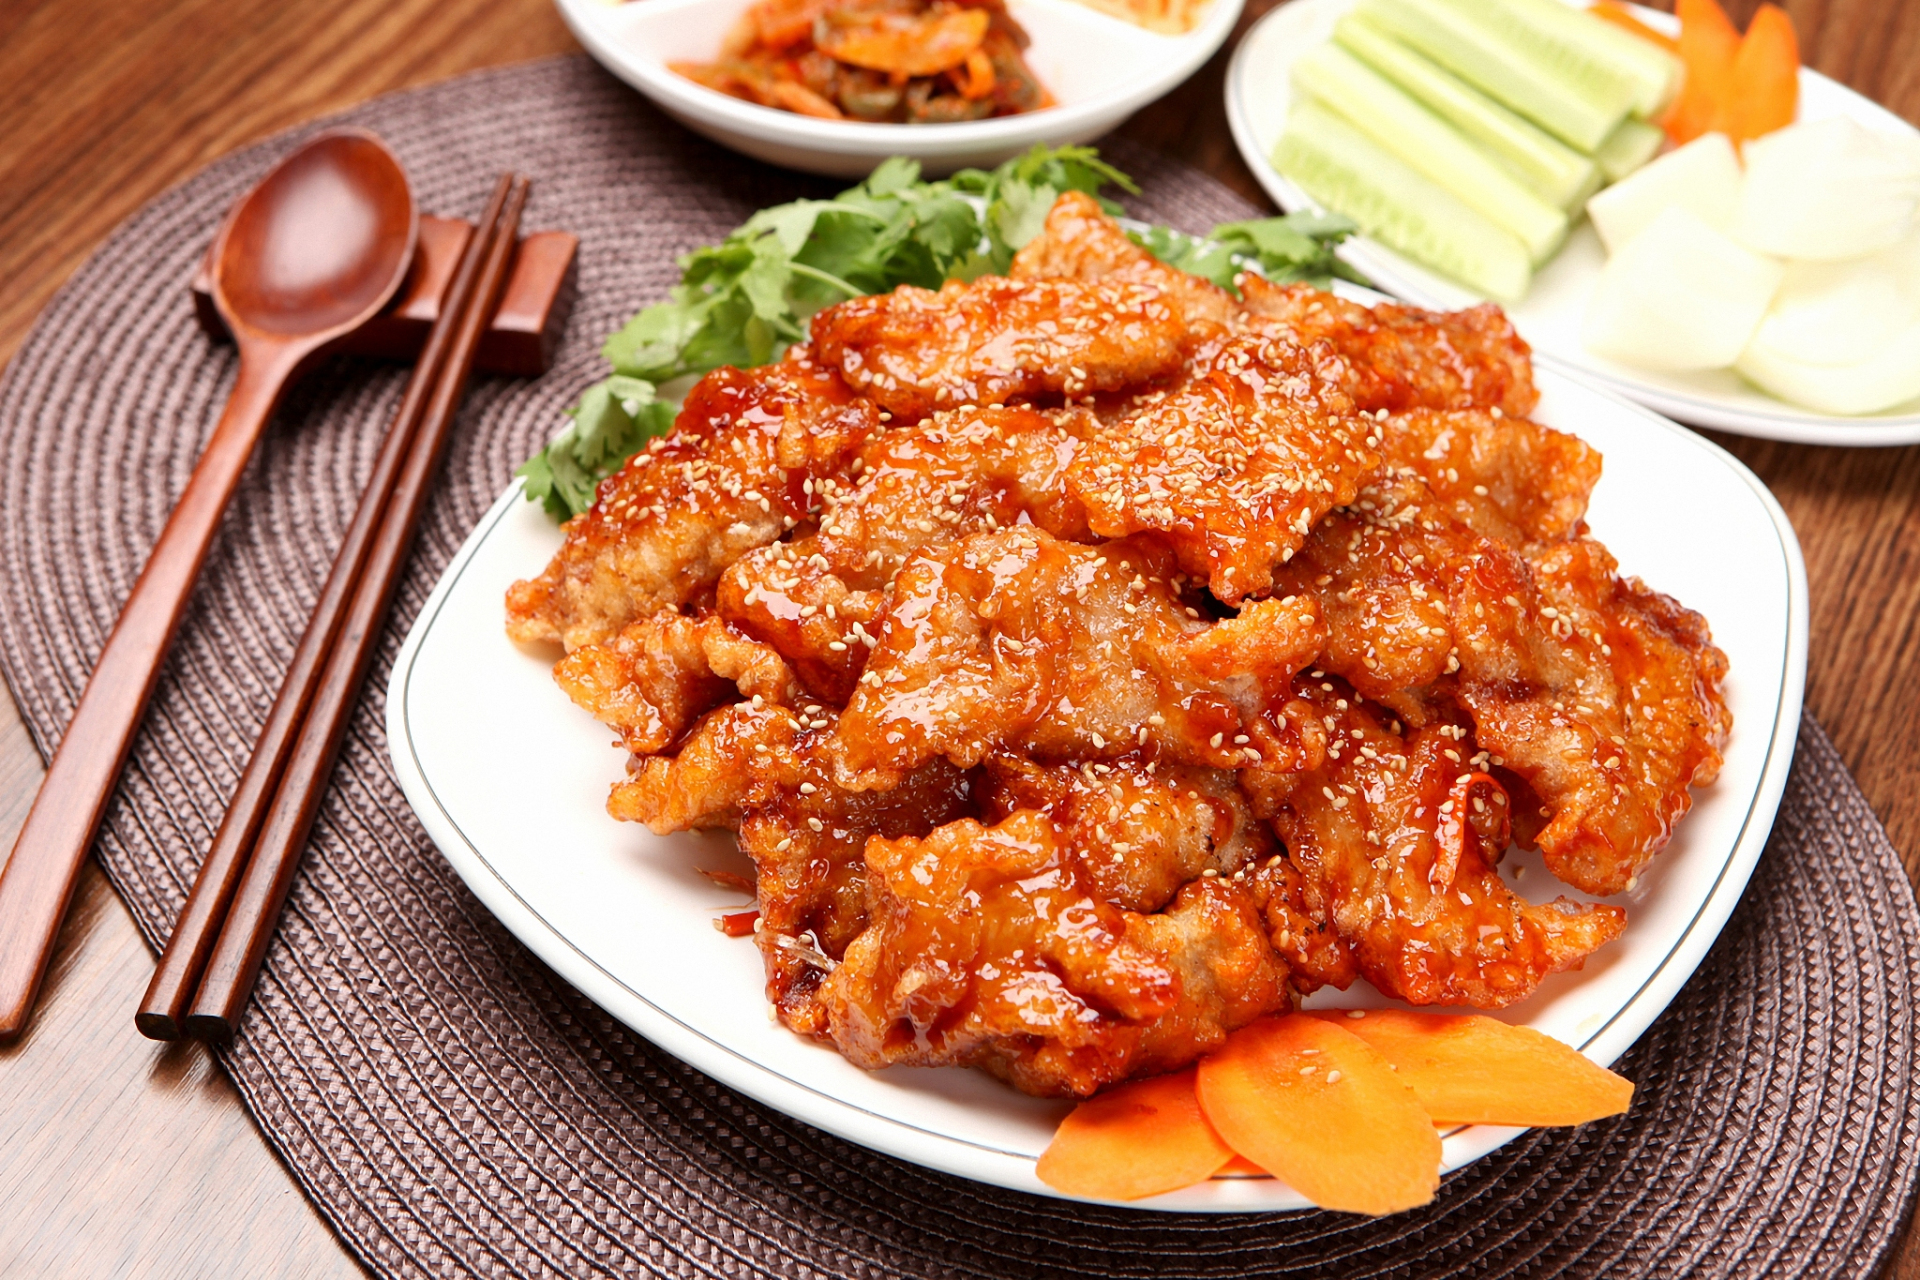 锅包肉是东北地区的传统名菜,以猪肉为主料,佐以香料和酱油等调味料